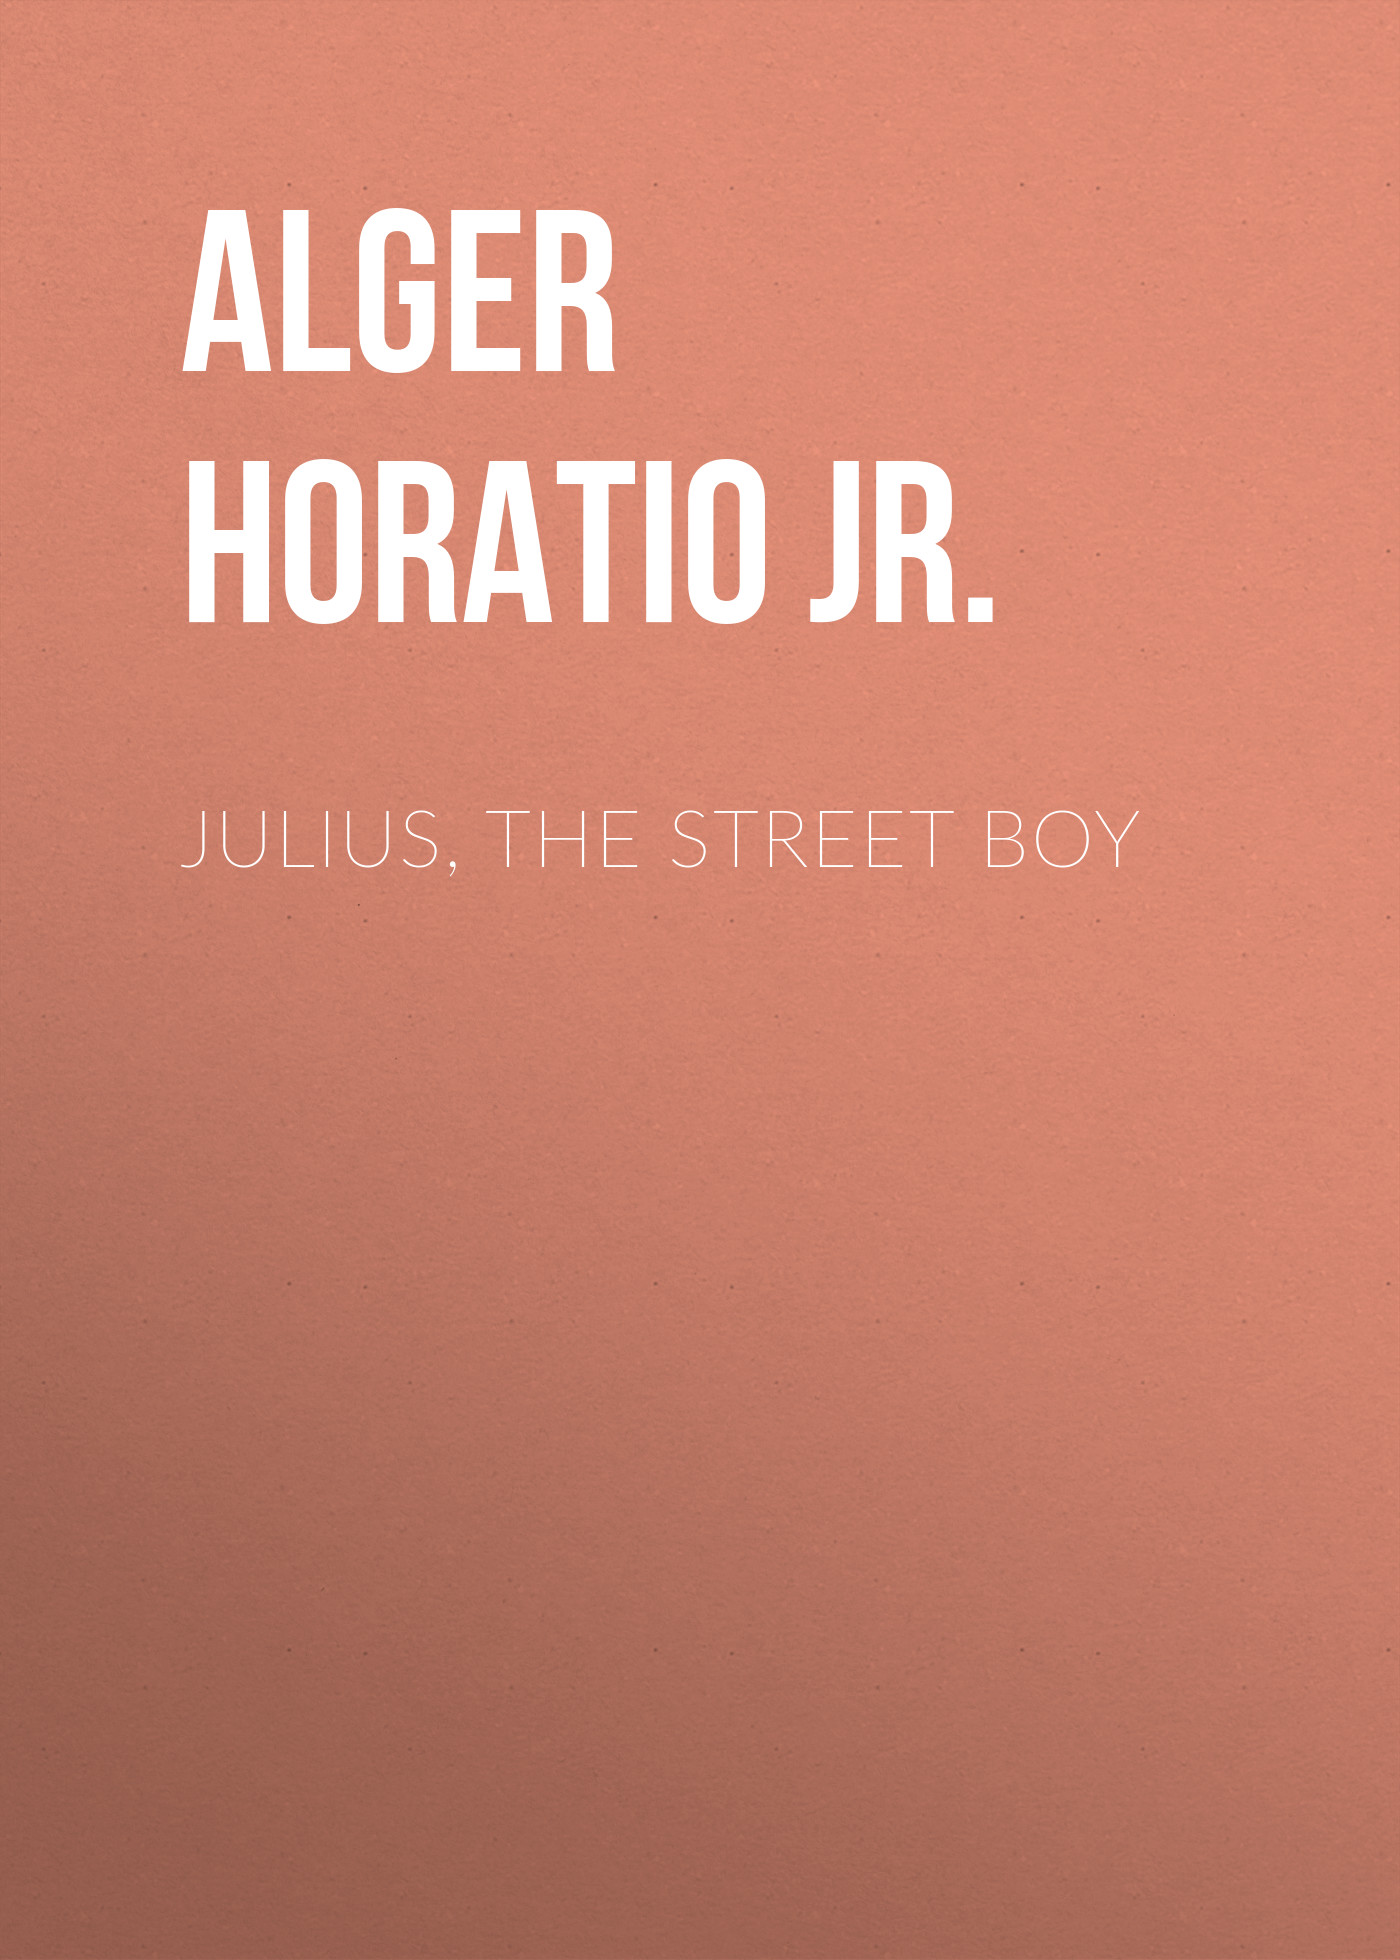 Книга Julius, The Street Boy из серии , созданная Horatio Alger, может относится к жанру Зарубежные детские книги, Литература 19 века, Зарубежная старинная литература, Зарубежная классика. Стоимость электронной книги Julius, The Street Boy с идентификатором 34840974 составляет 0 руб.